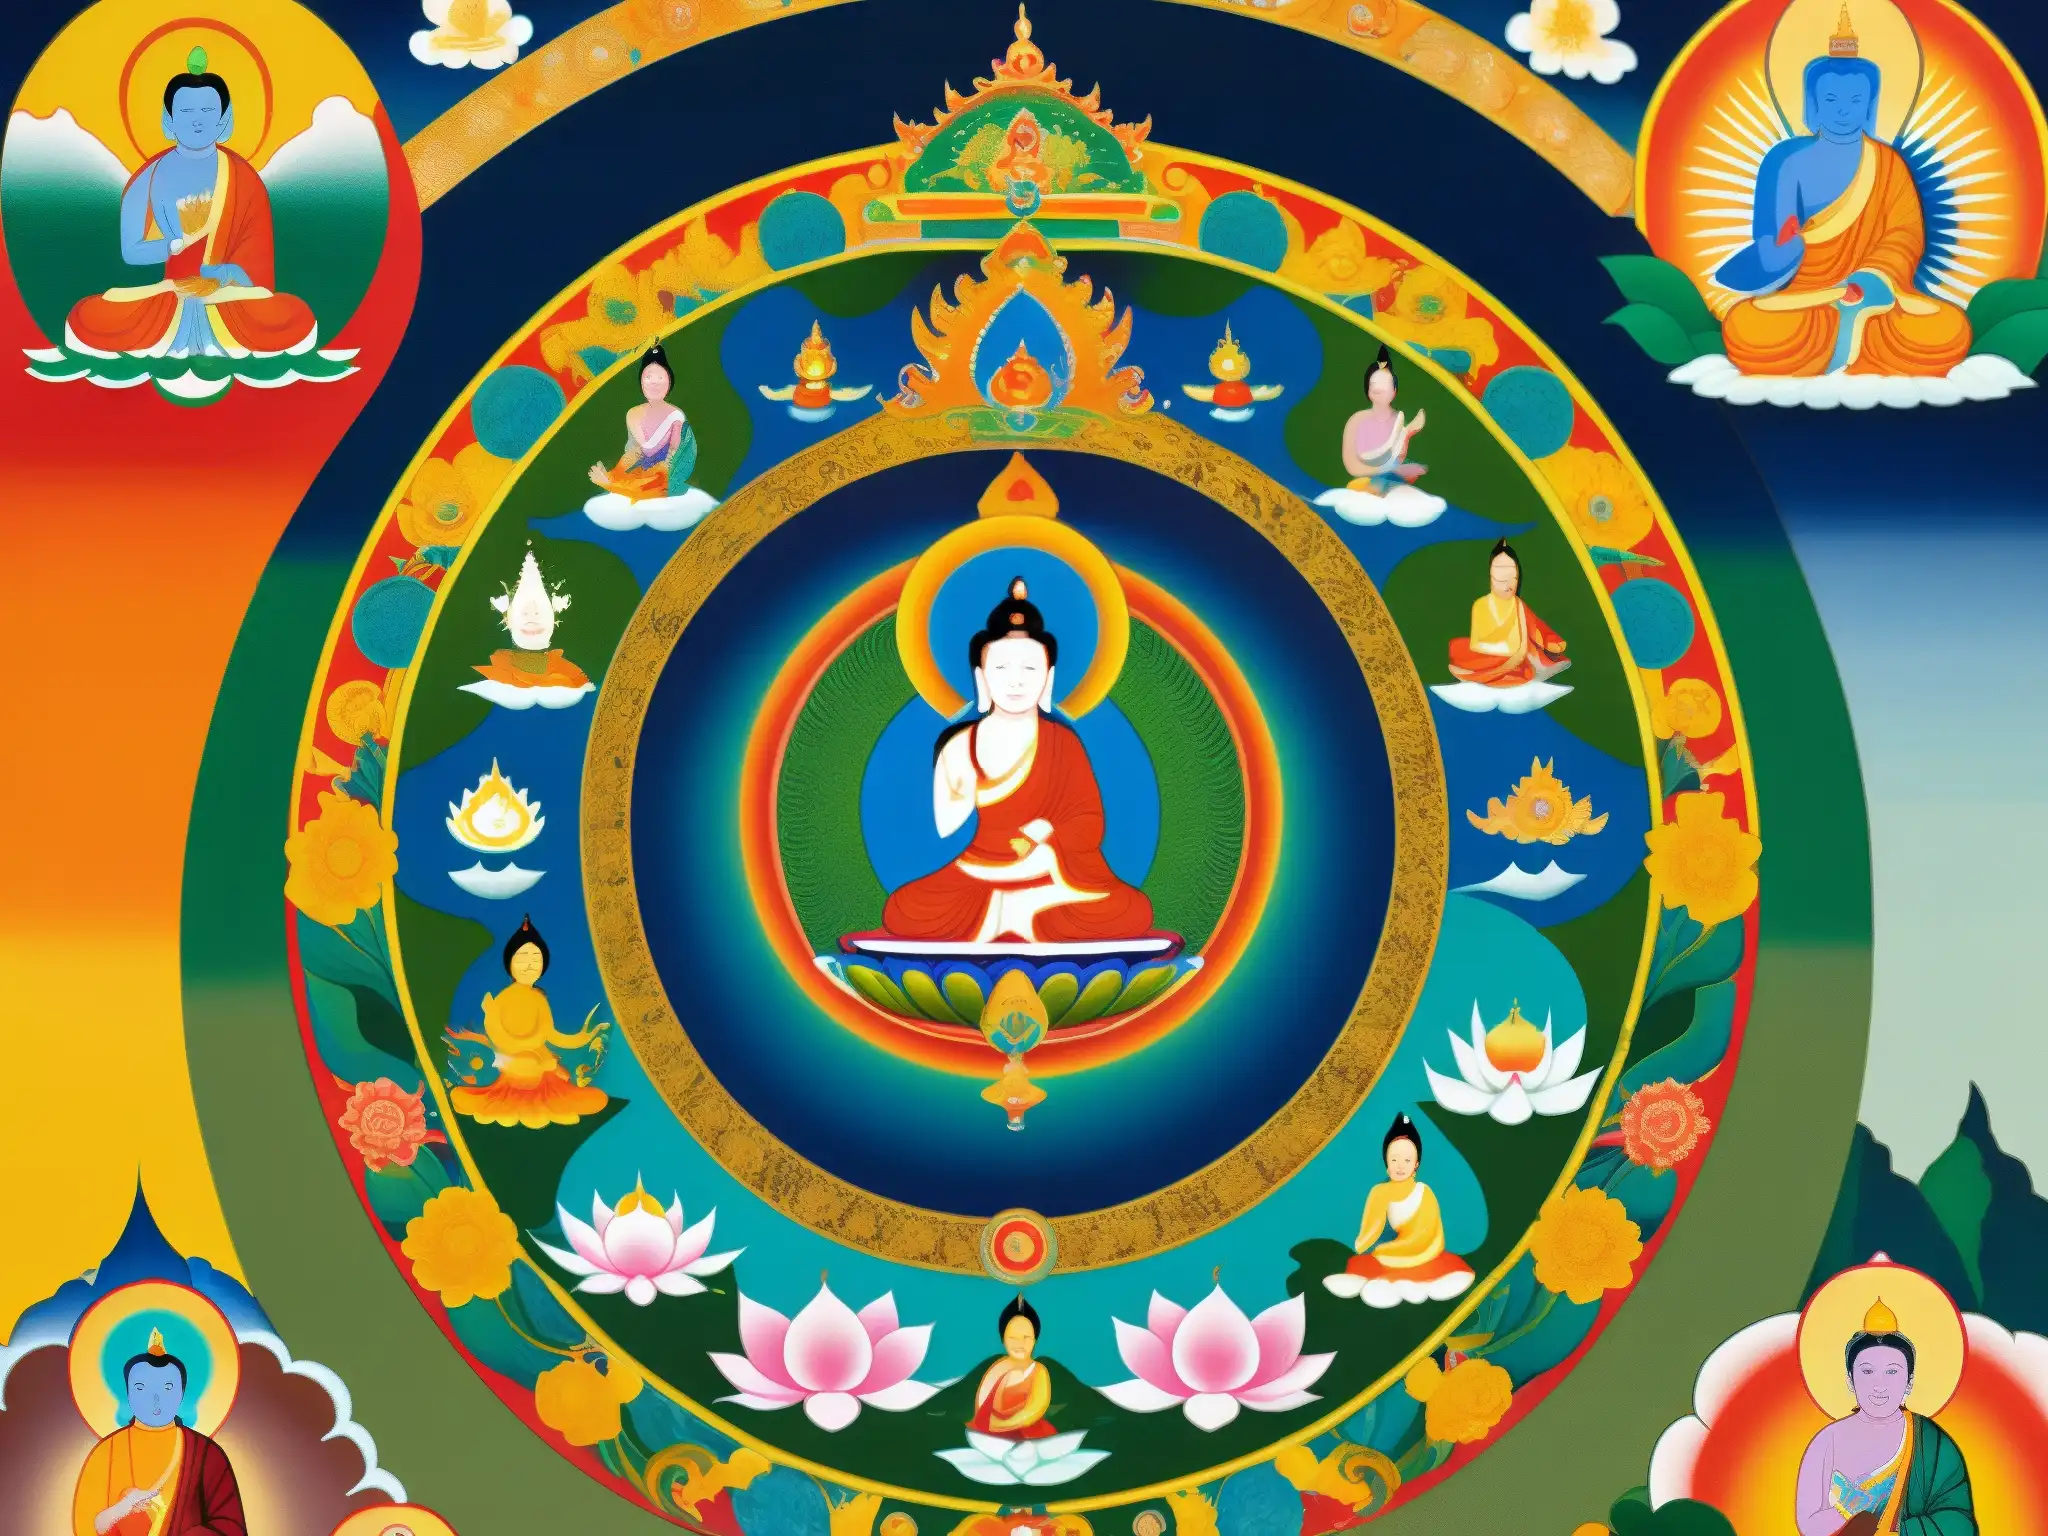 Vibrante pintura budista Thangka ilustrando la reencarnación y relatos espirituales